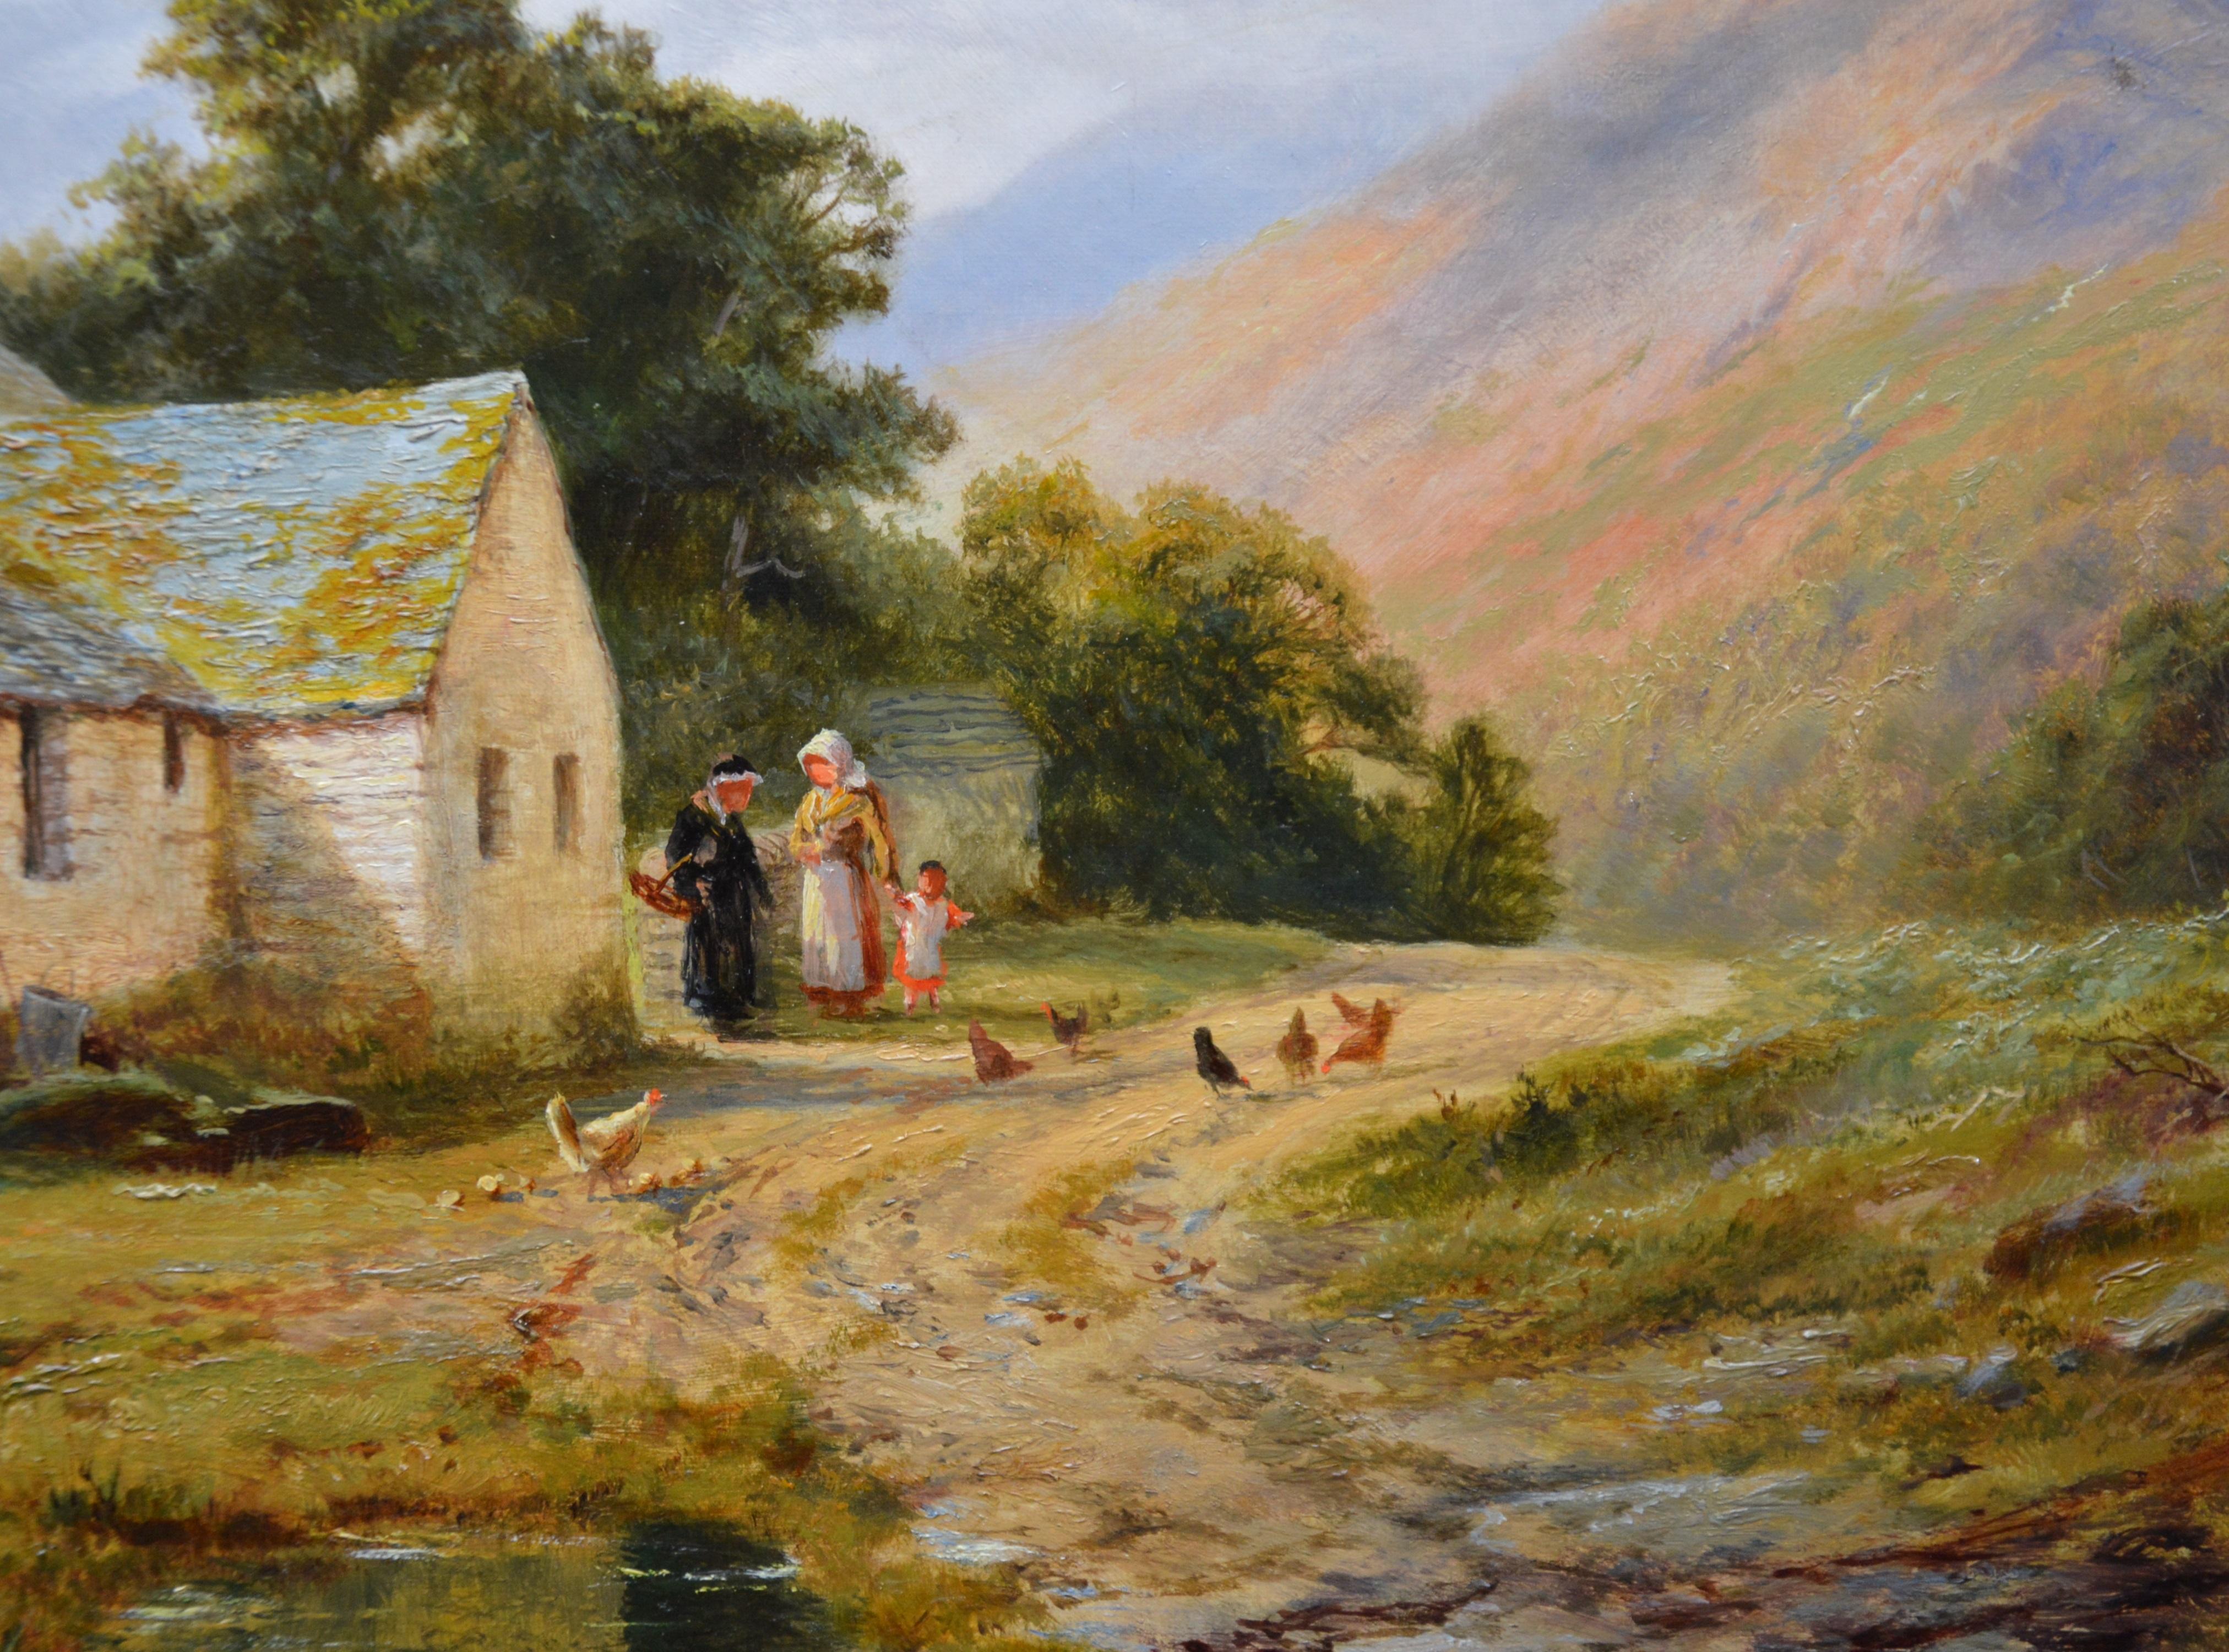 The Lledr Valley - Sommerlandschaft des 19. Jahrhunderts, Ölgemälde von Snowdonia Wales, Wales 1